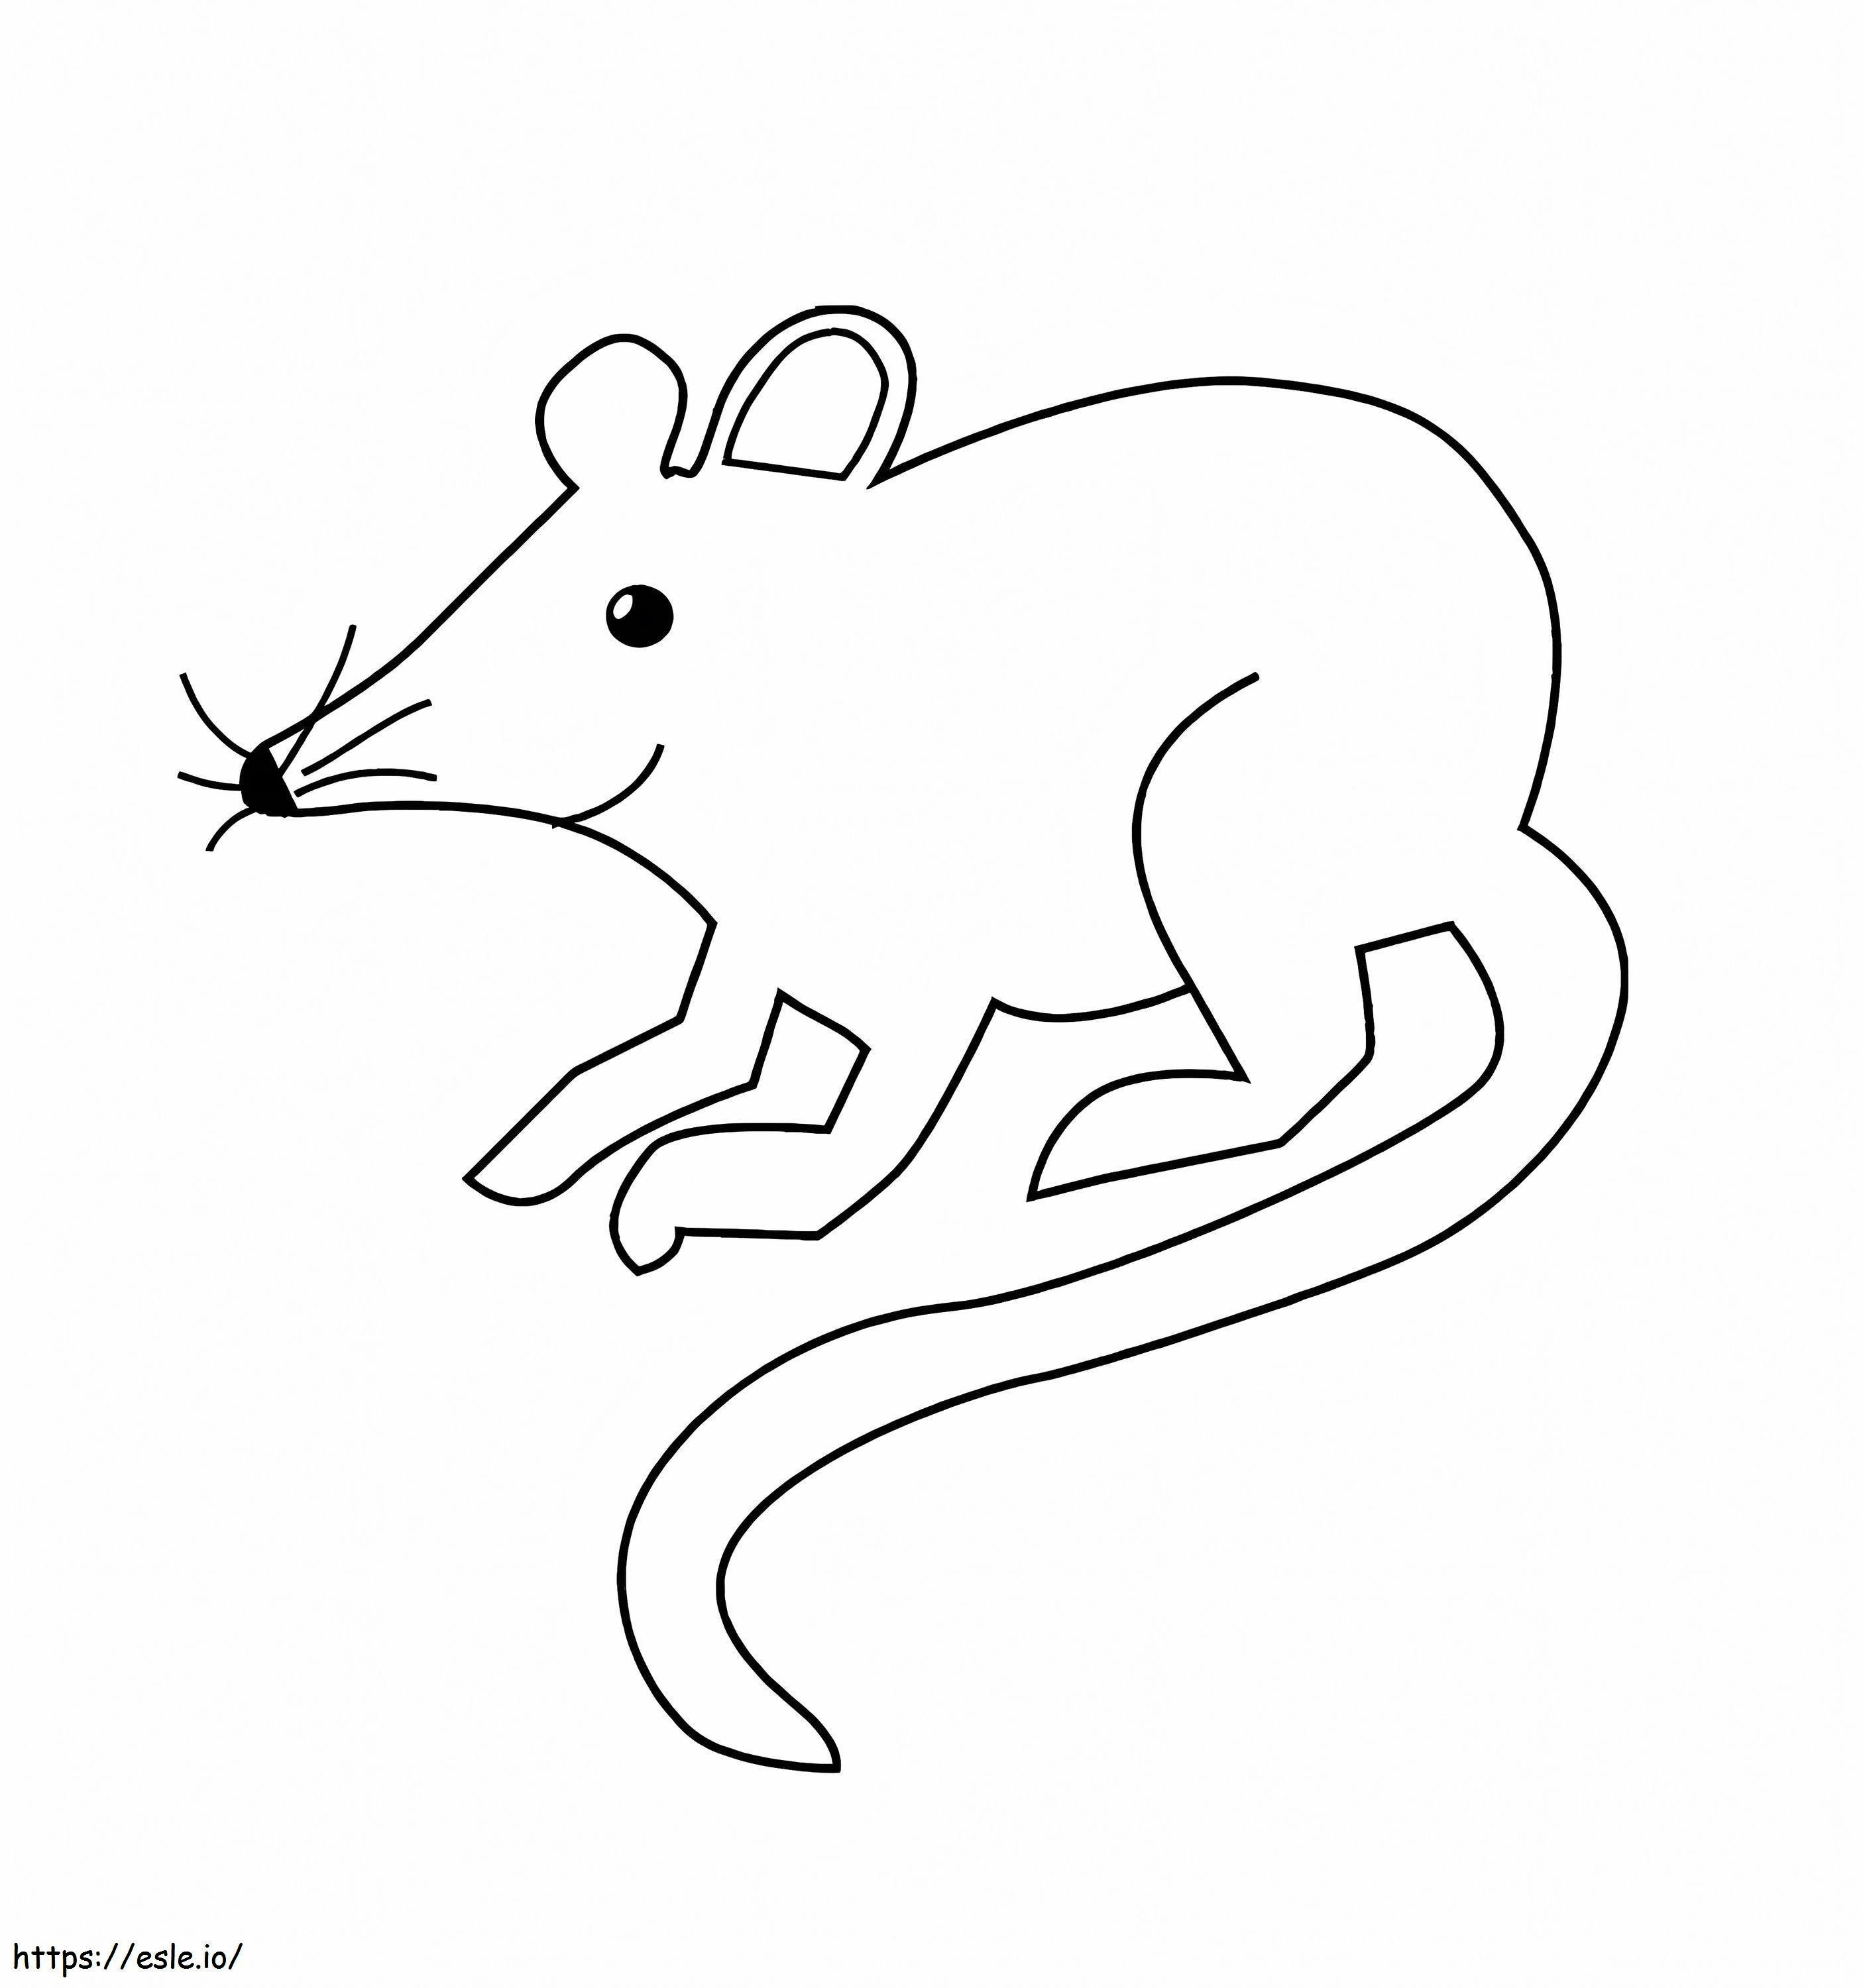 Coloriage Rat de dessin animé facile à imprimer dessin